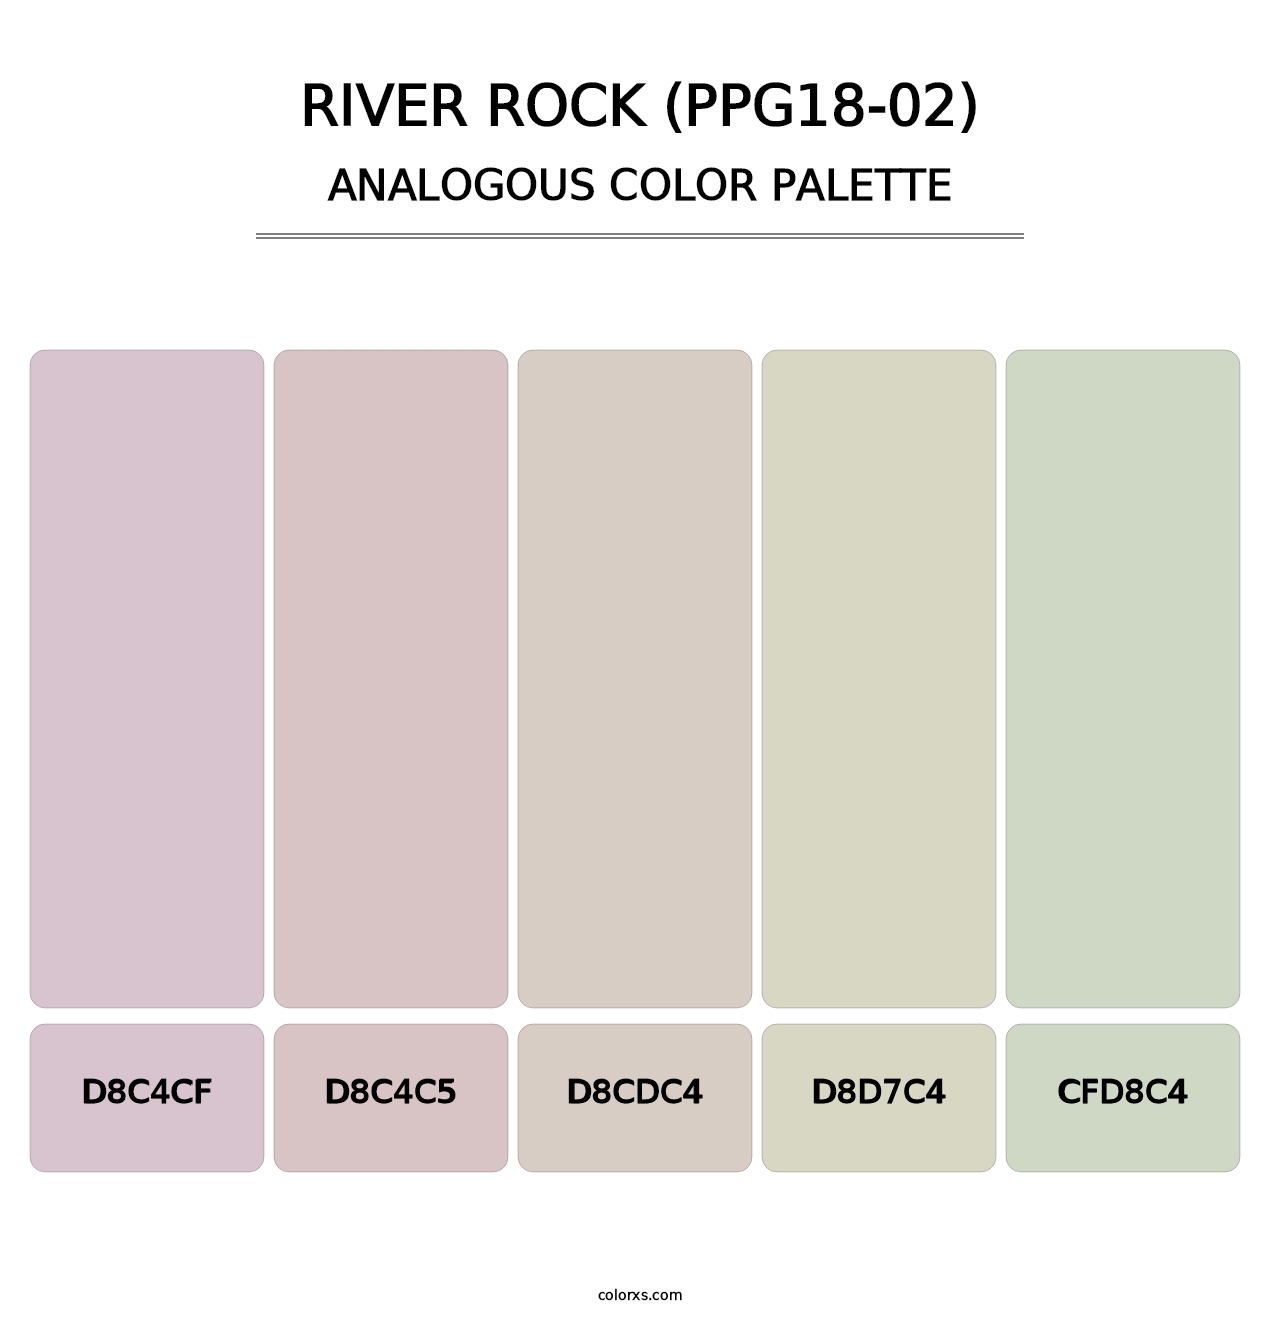 River Rock (PPG18-02) - Analogous Color Palette